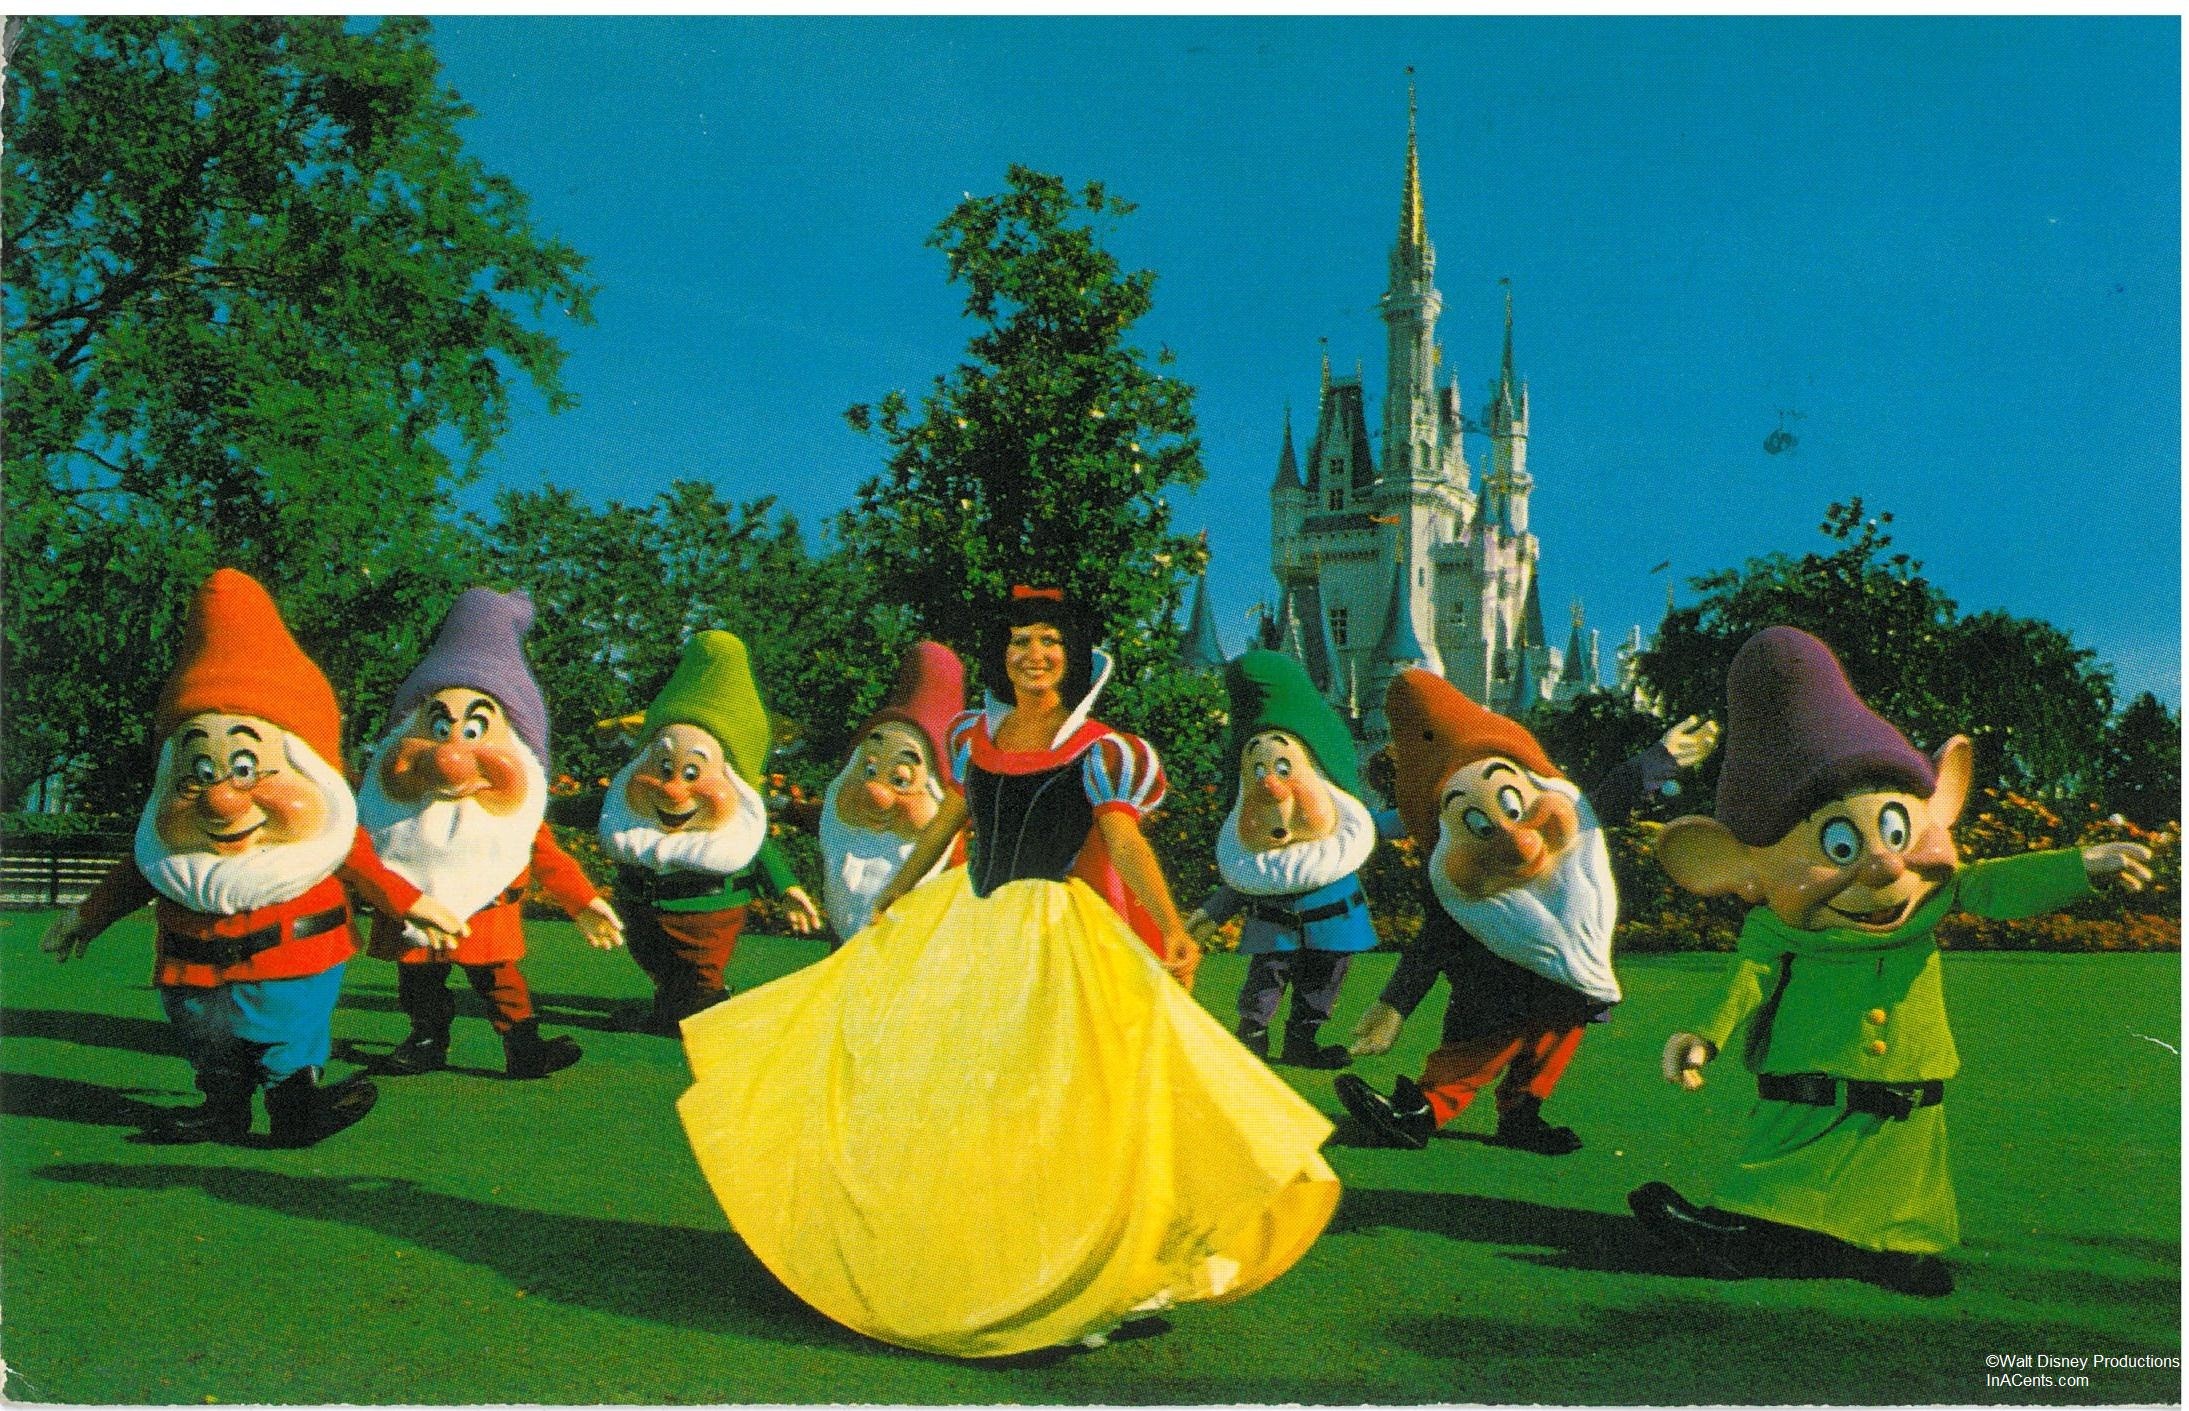 2189x1411 July 1983 Snow White & the Seven Dwarfs Postcard